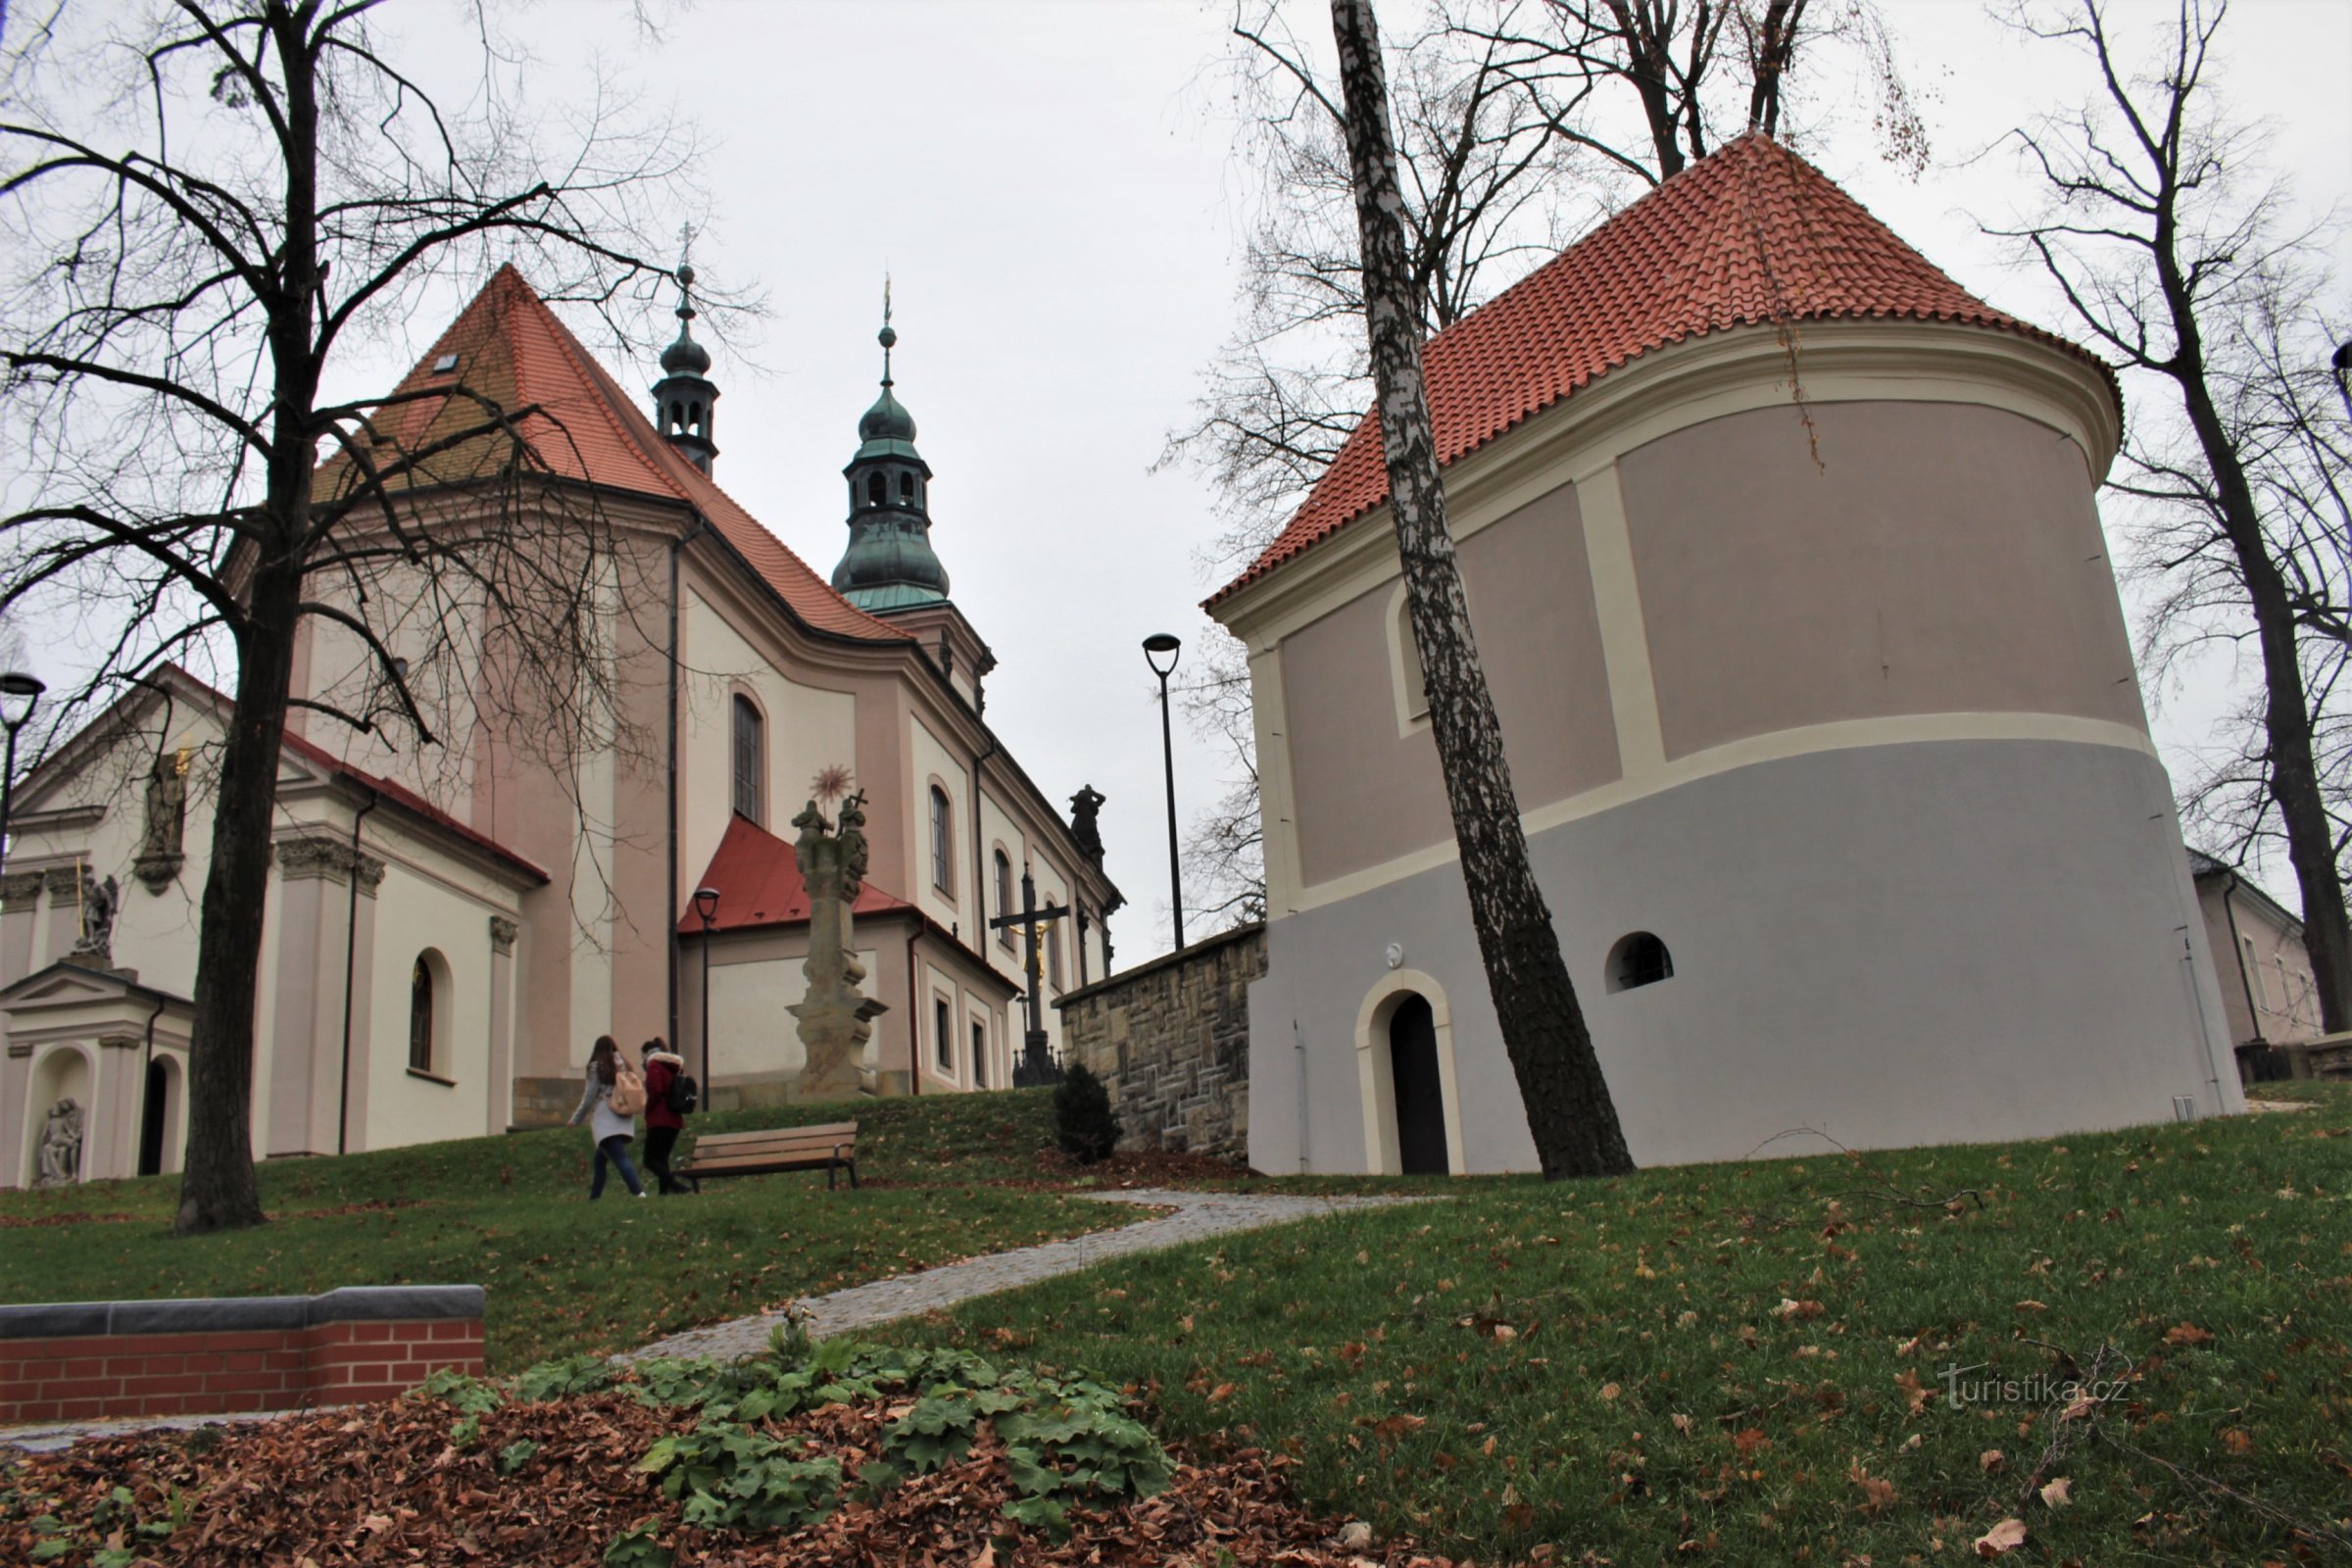 Ústí nad Orlicí - parc près de l'église